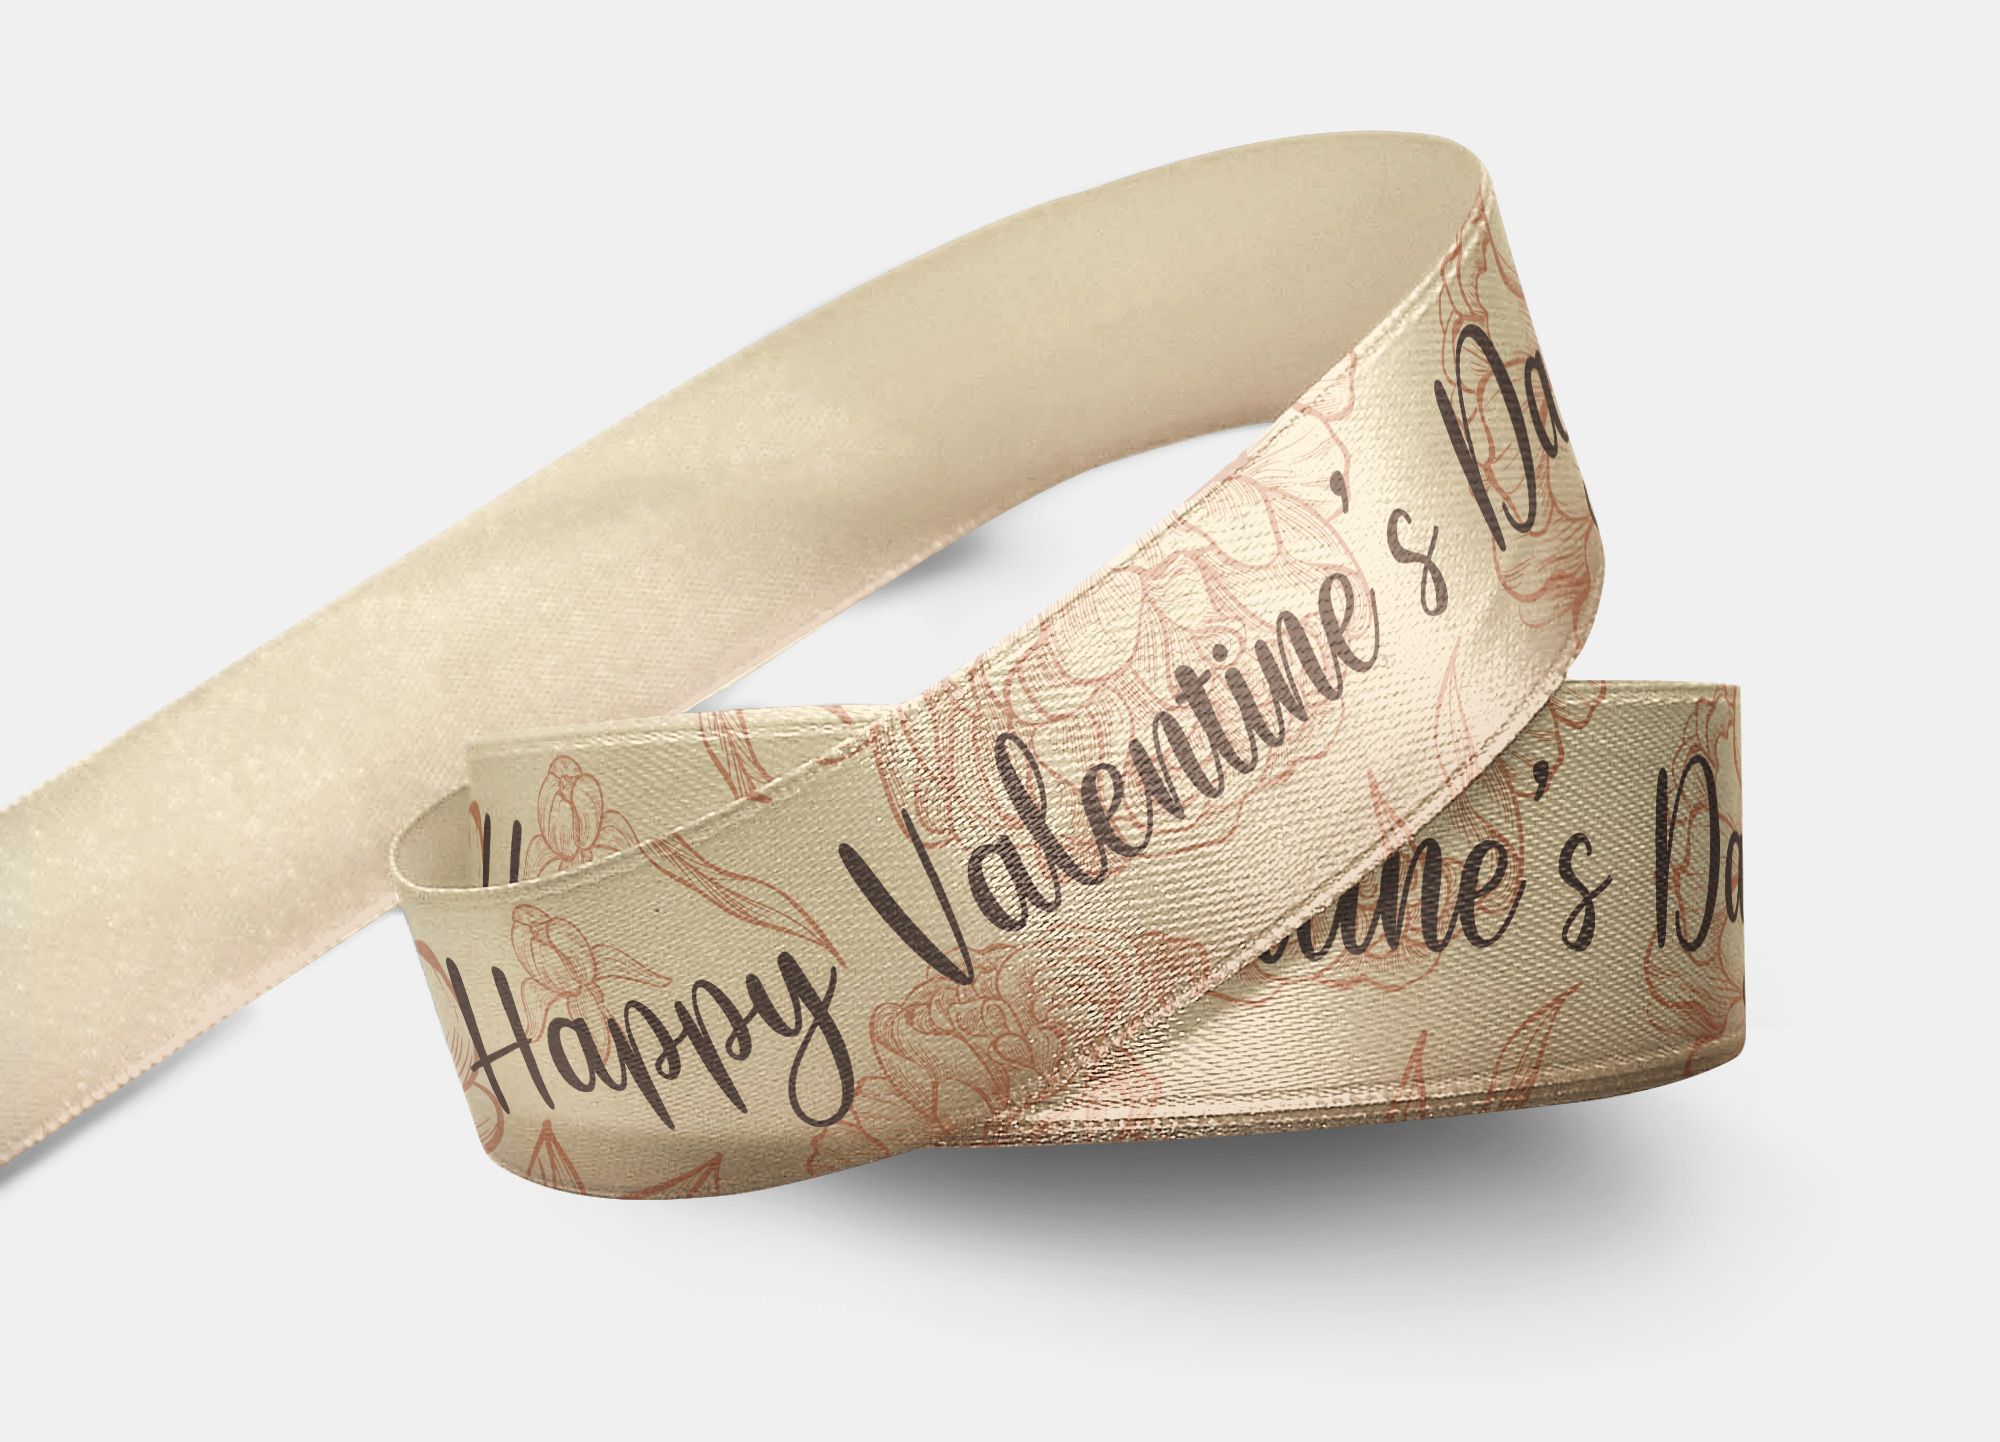 Nastro in raso, con pattern floreale e scritta Happy Valentine's Day.